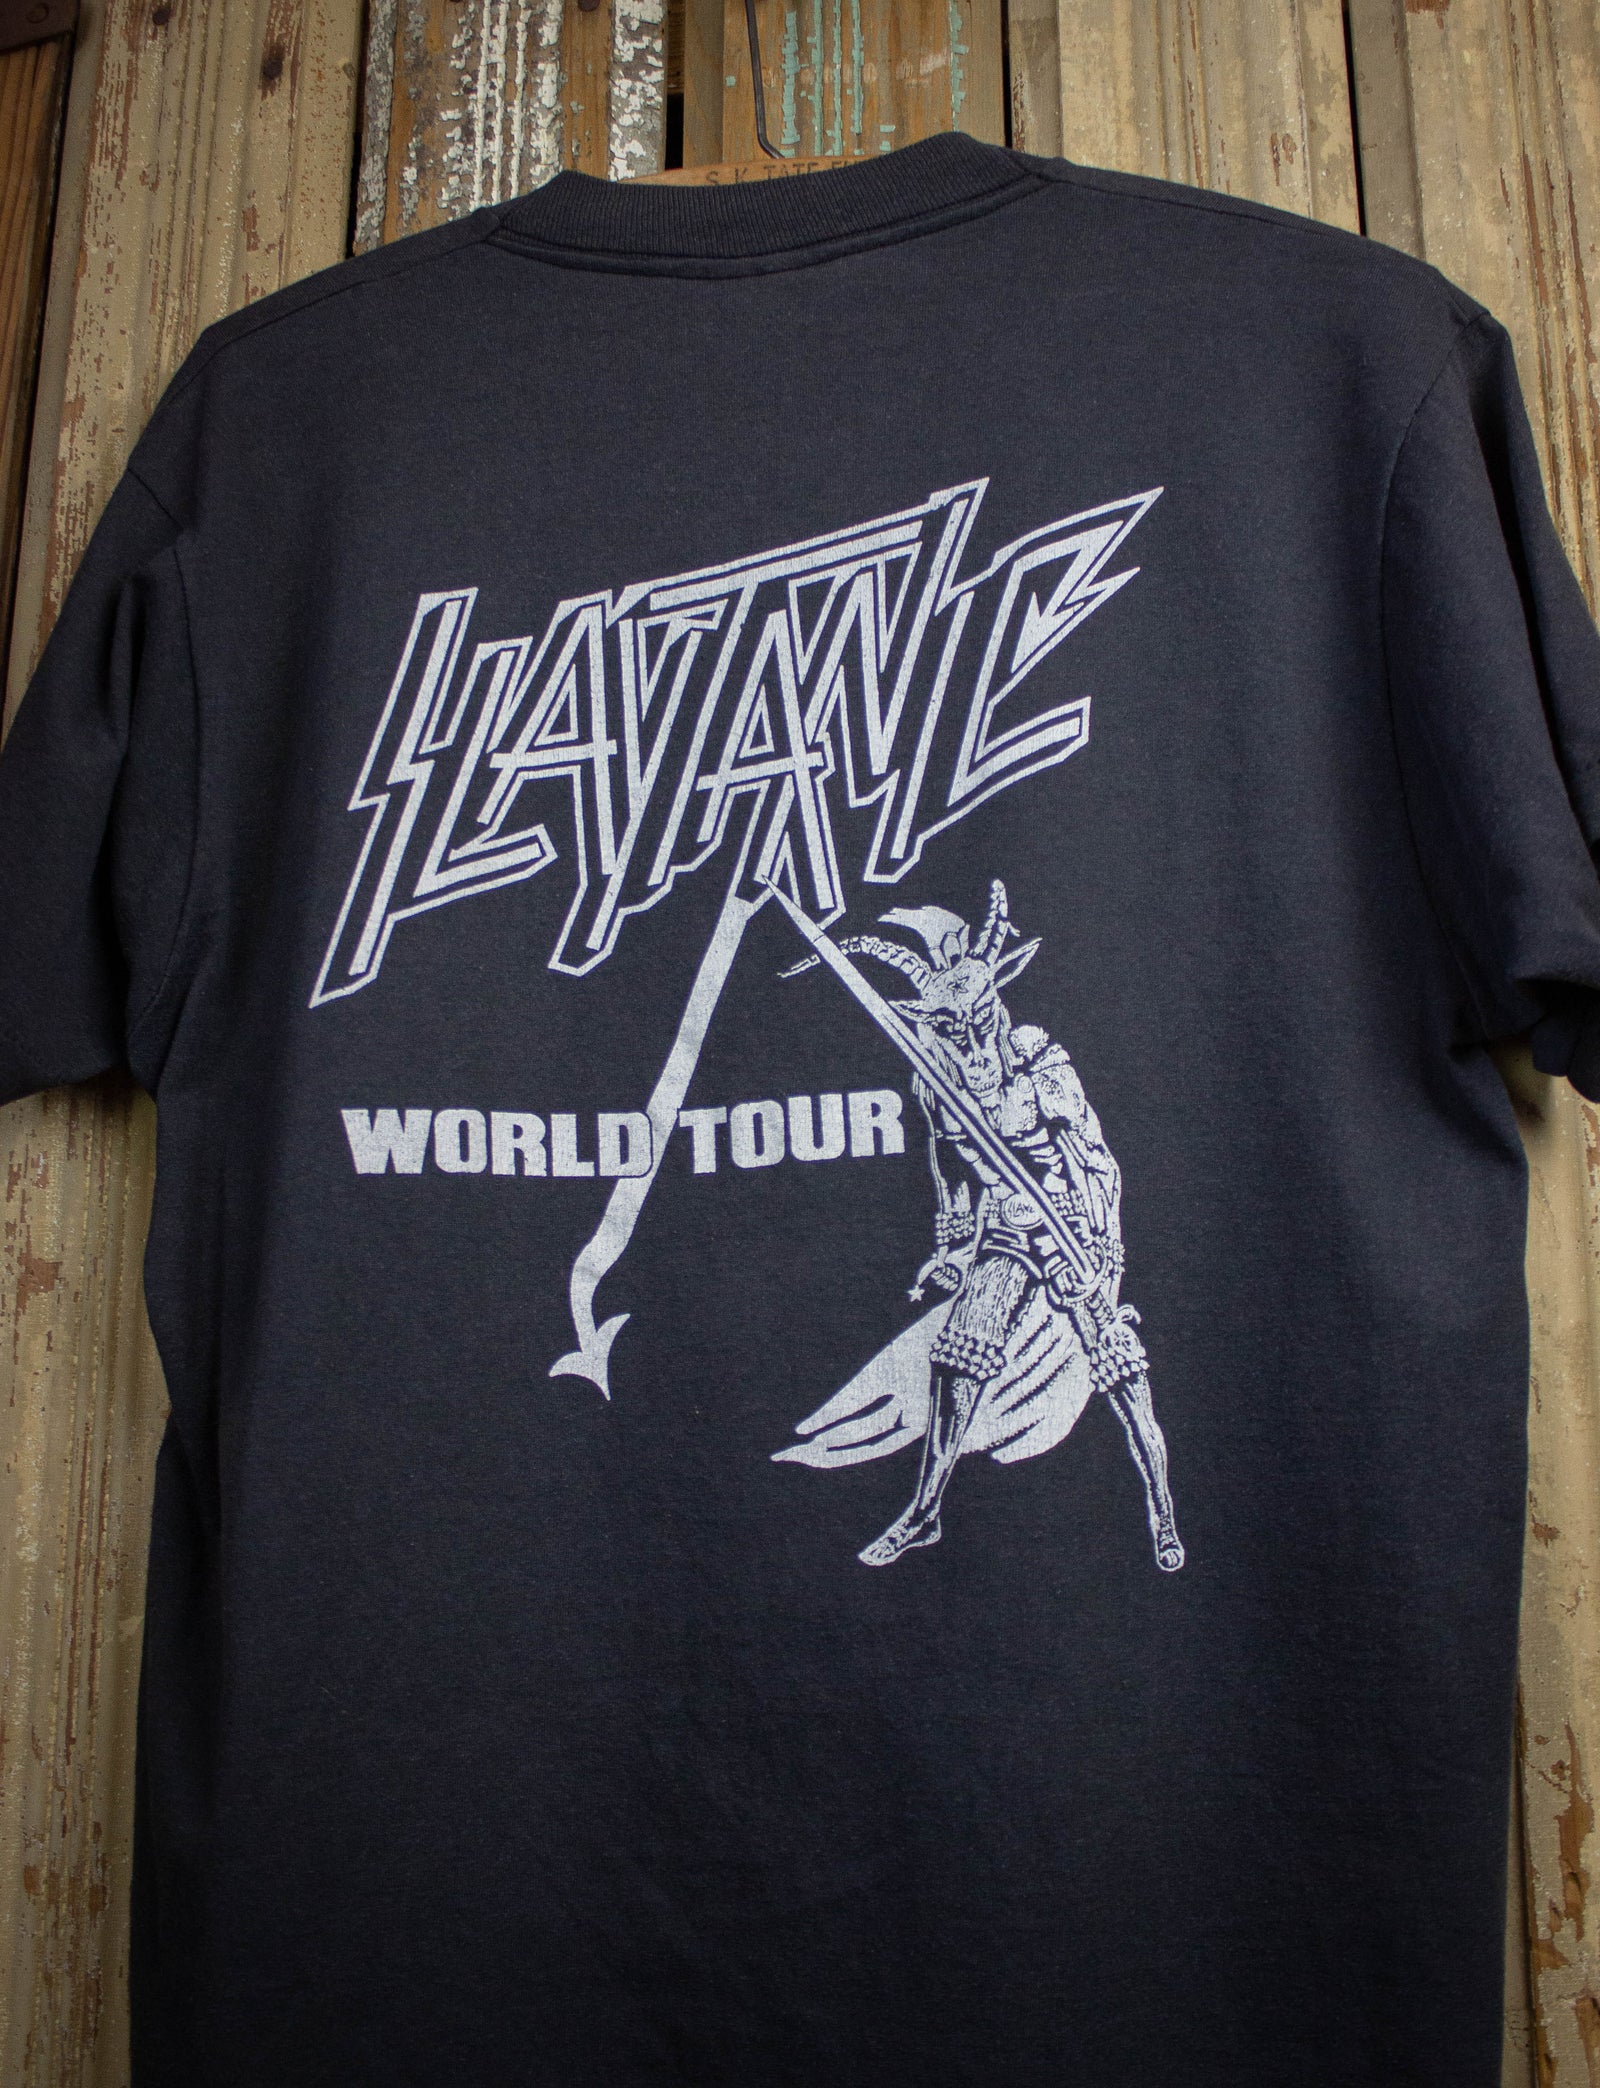 19,950円激レア 80s Slayer スレイヤー ツアー Tシャツ ヘヴィメタル